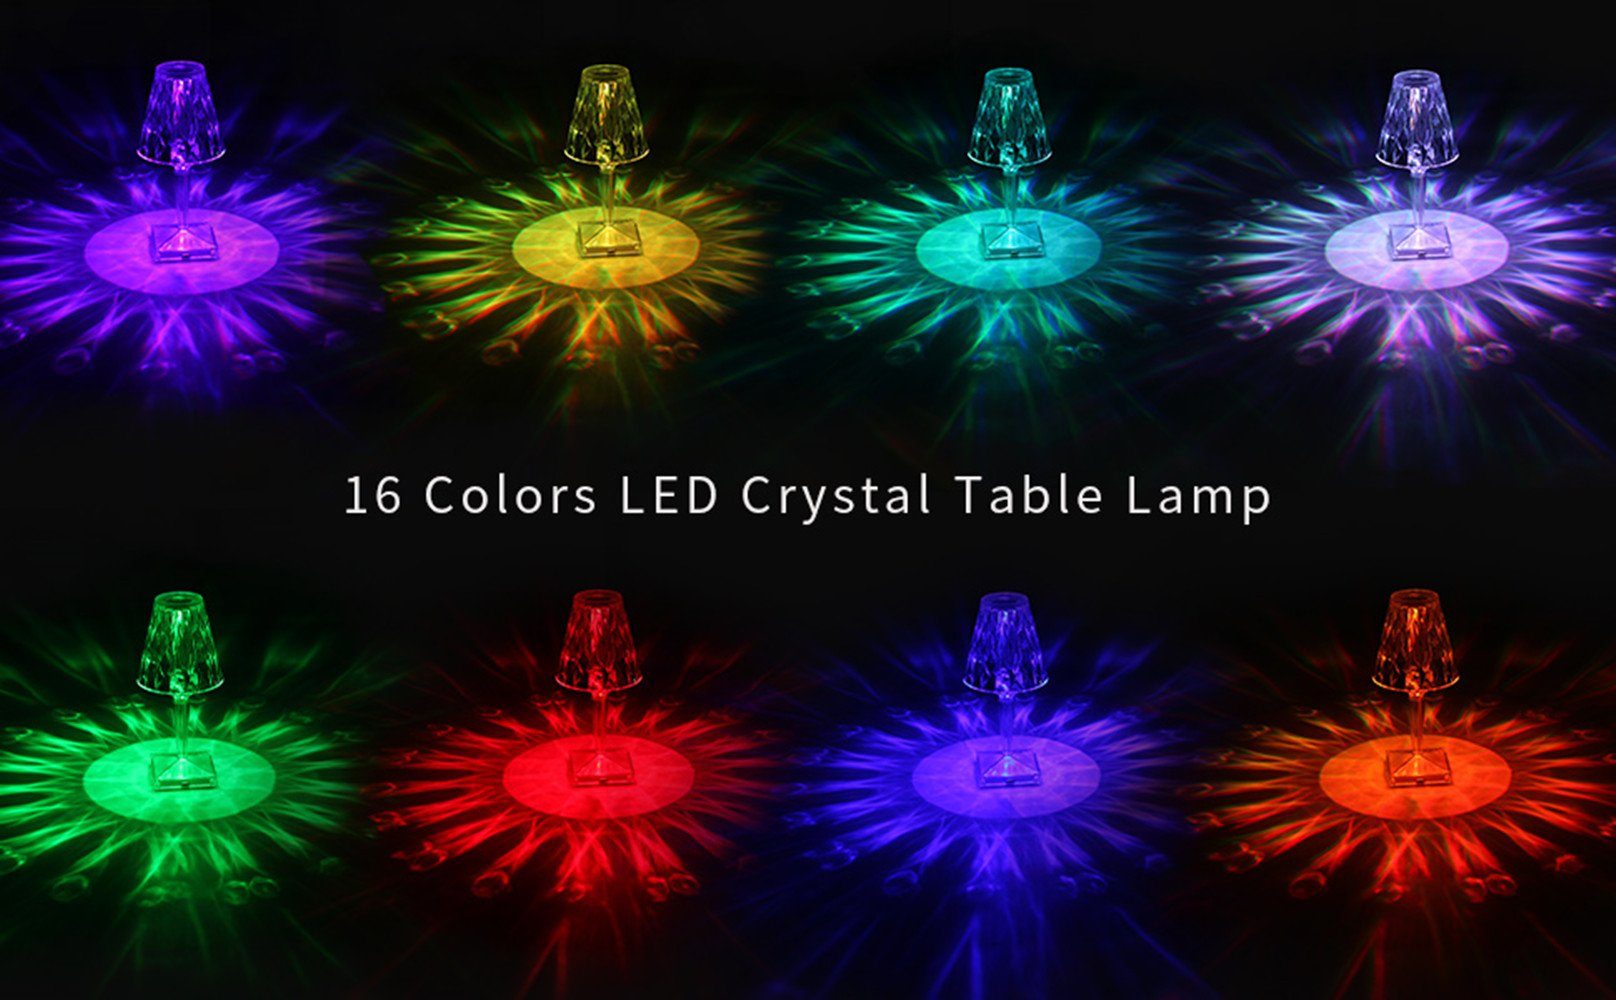 Nachttischlampe LED Nachttischlampe RGB LED Tischlampe, XDeer Tischleuchte, Touch und Kristall Schreibtischlampe mit Tischleuchte Fernbedienung, Touch